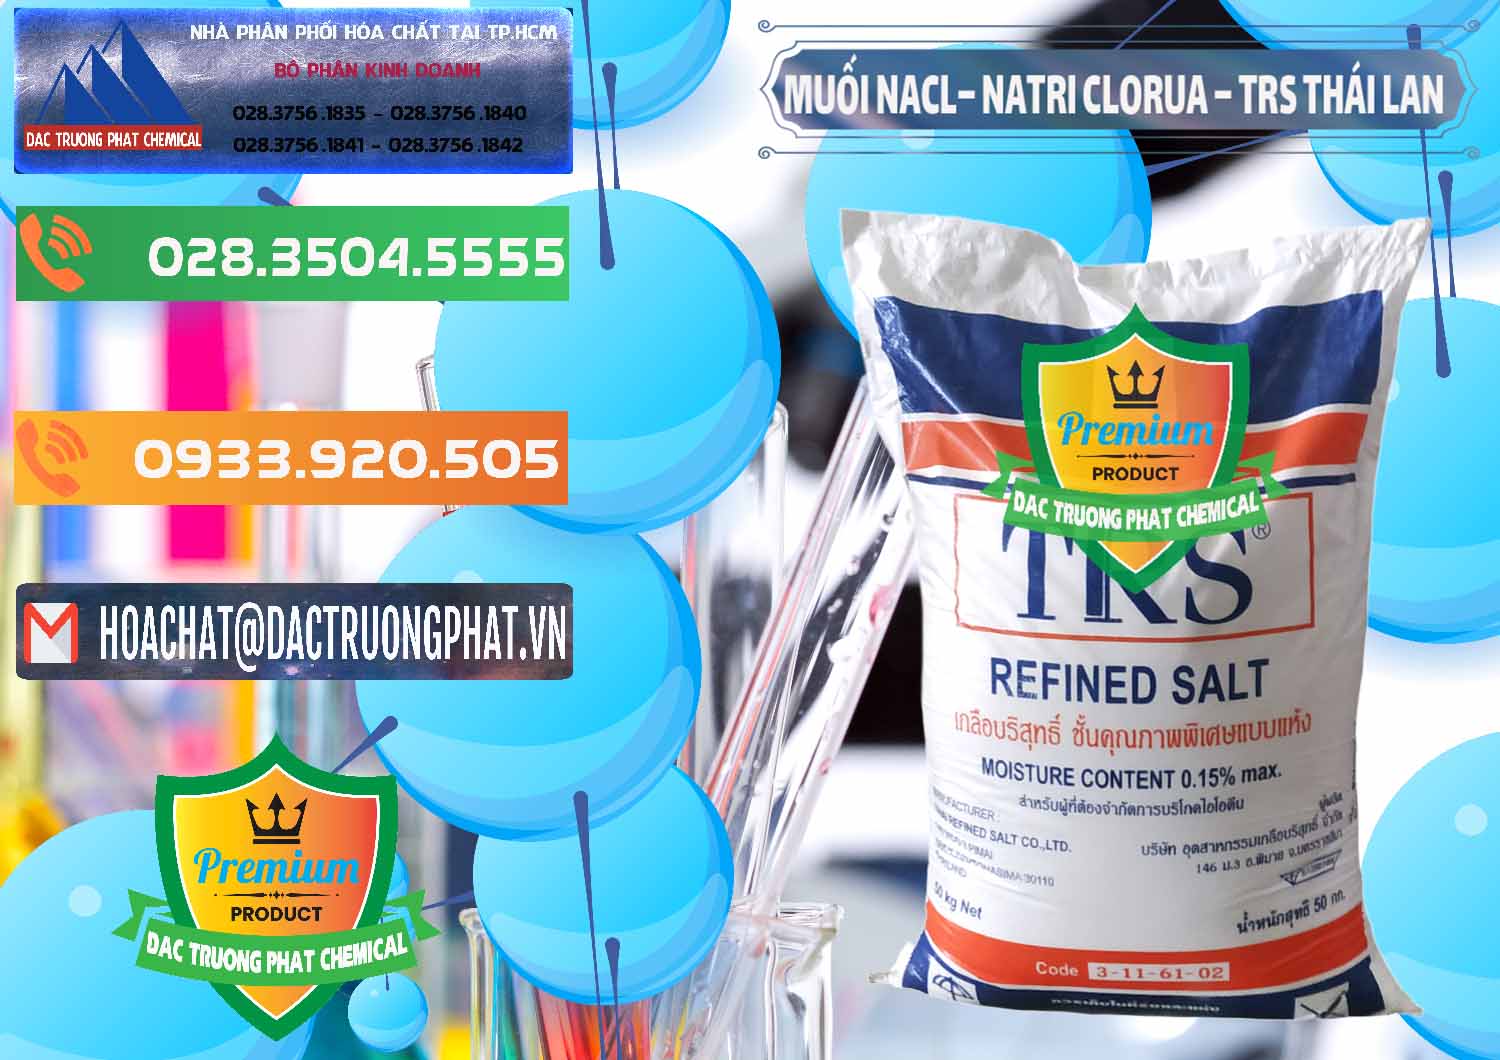 Cty chuyên bán & cung ứng Muối NaCL – Sodium Chloride TRS Thái Lan - 0096 - Đơn vị cung ứng - phân phối hóa chất tại TP.HCM - hoachatxulynuoc.com.vn